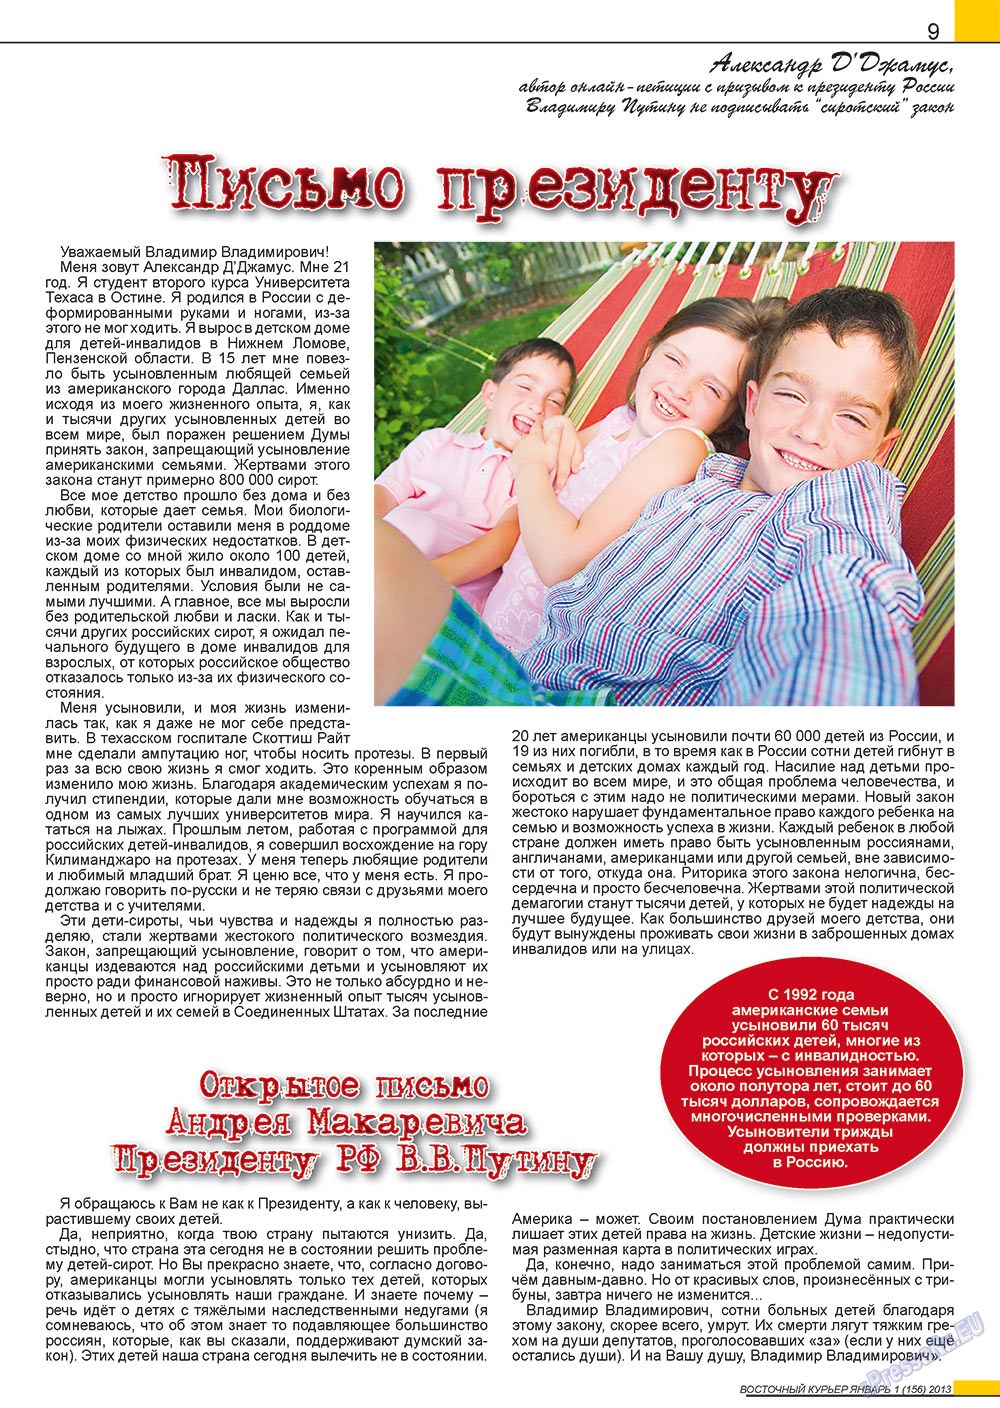 Восточный курьер (журнал). 2013 год, номер 1, стр. 9